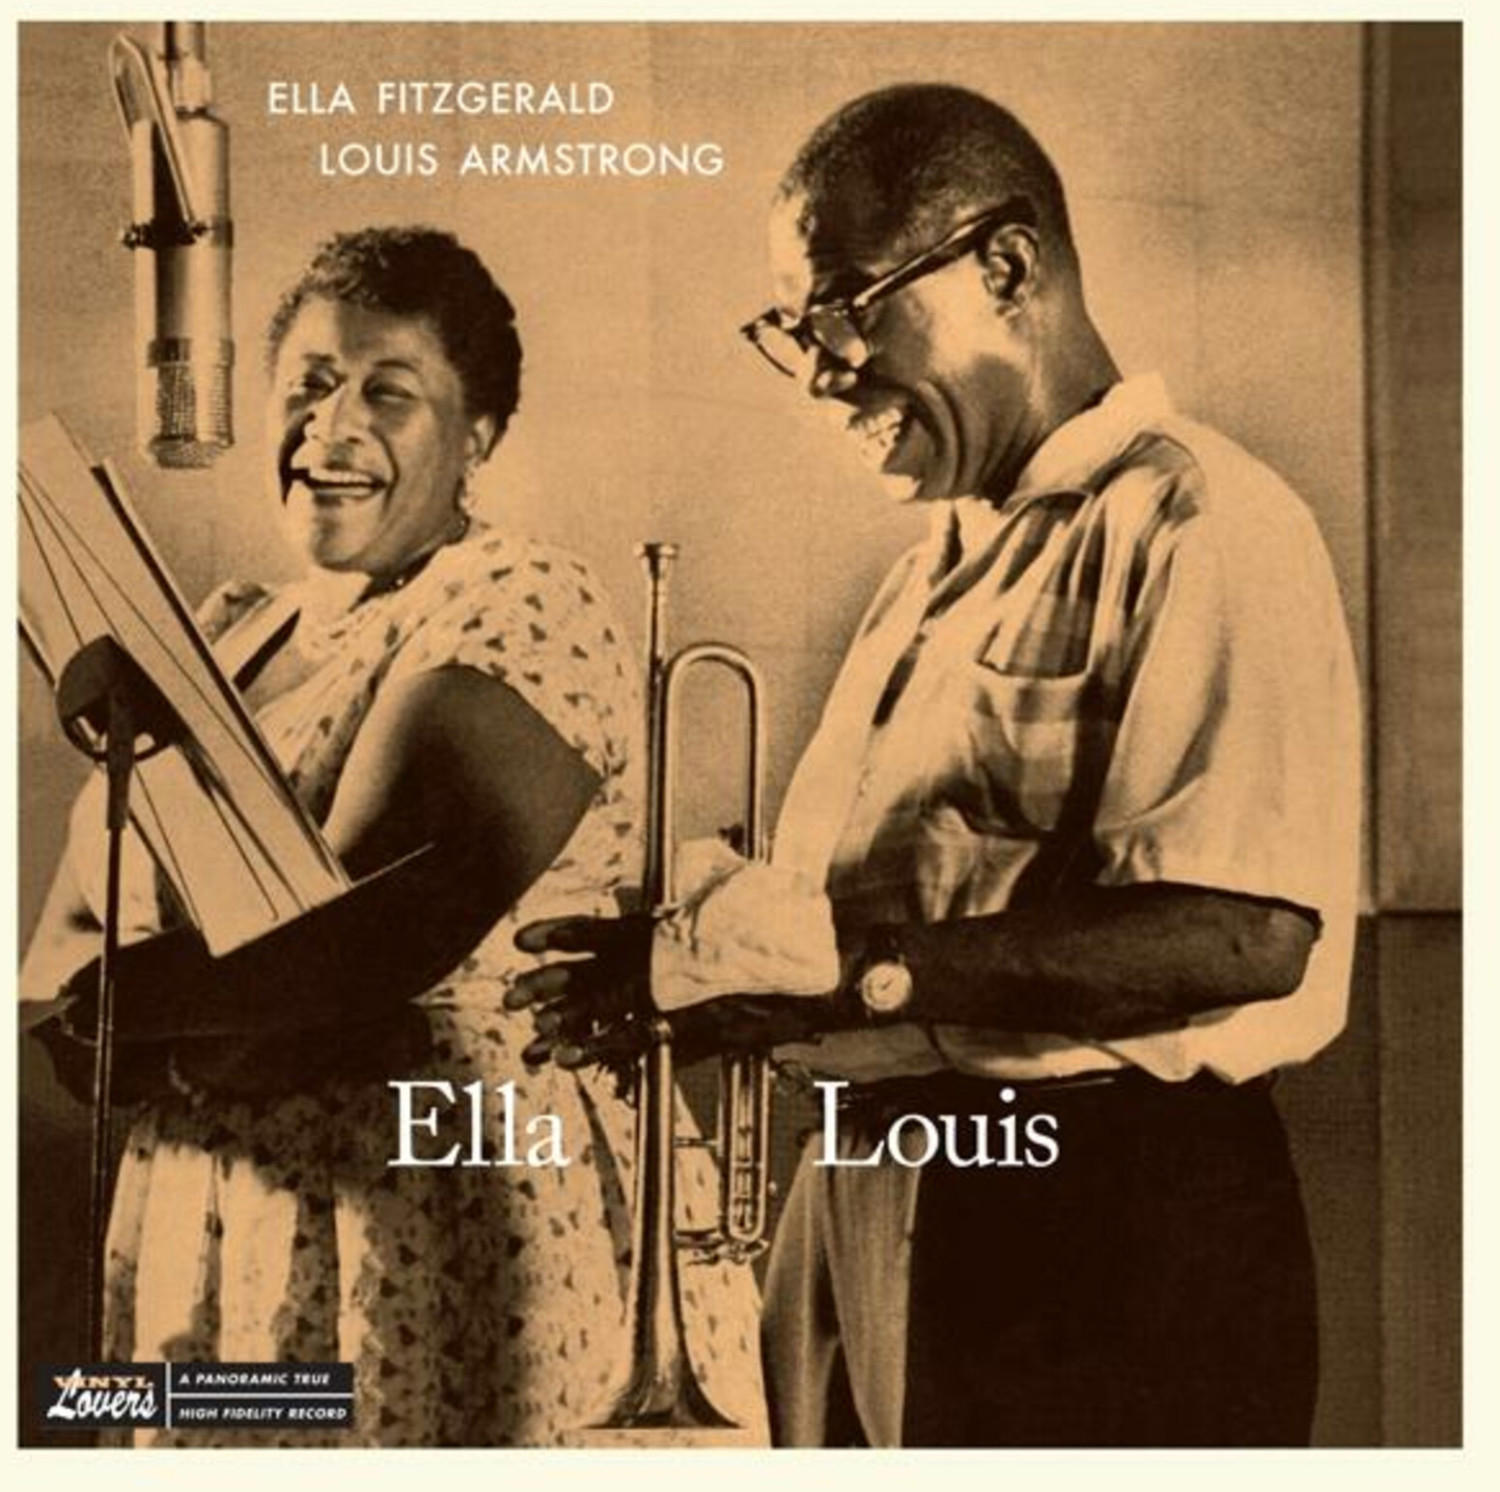 Ella Fitzgerald & Louis Armstrong - Ella And Louis+1 Bonus Track (180g Lp) [Vinyl]